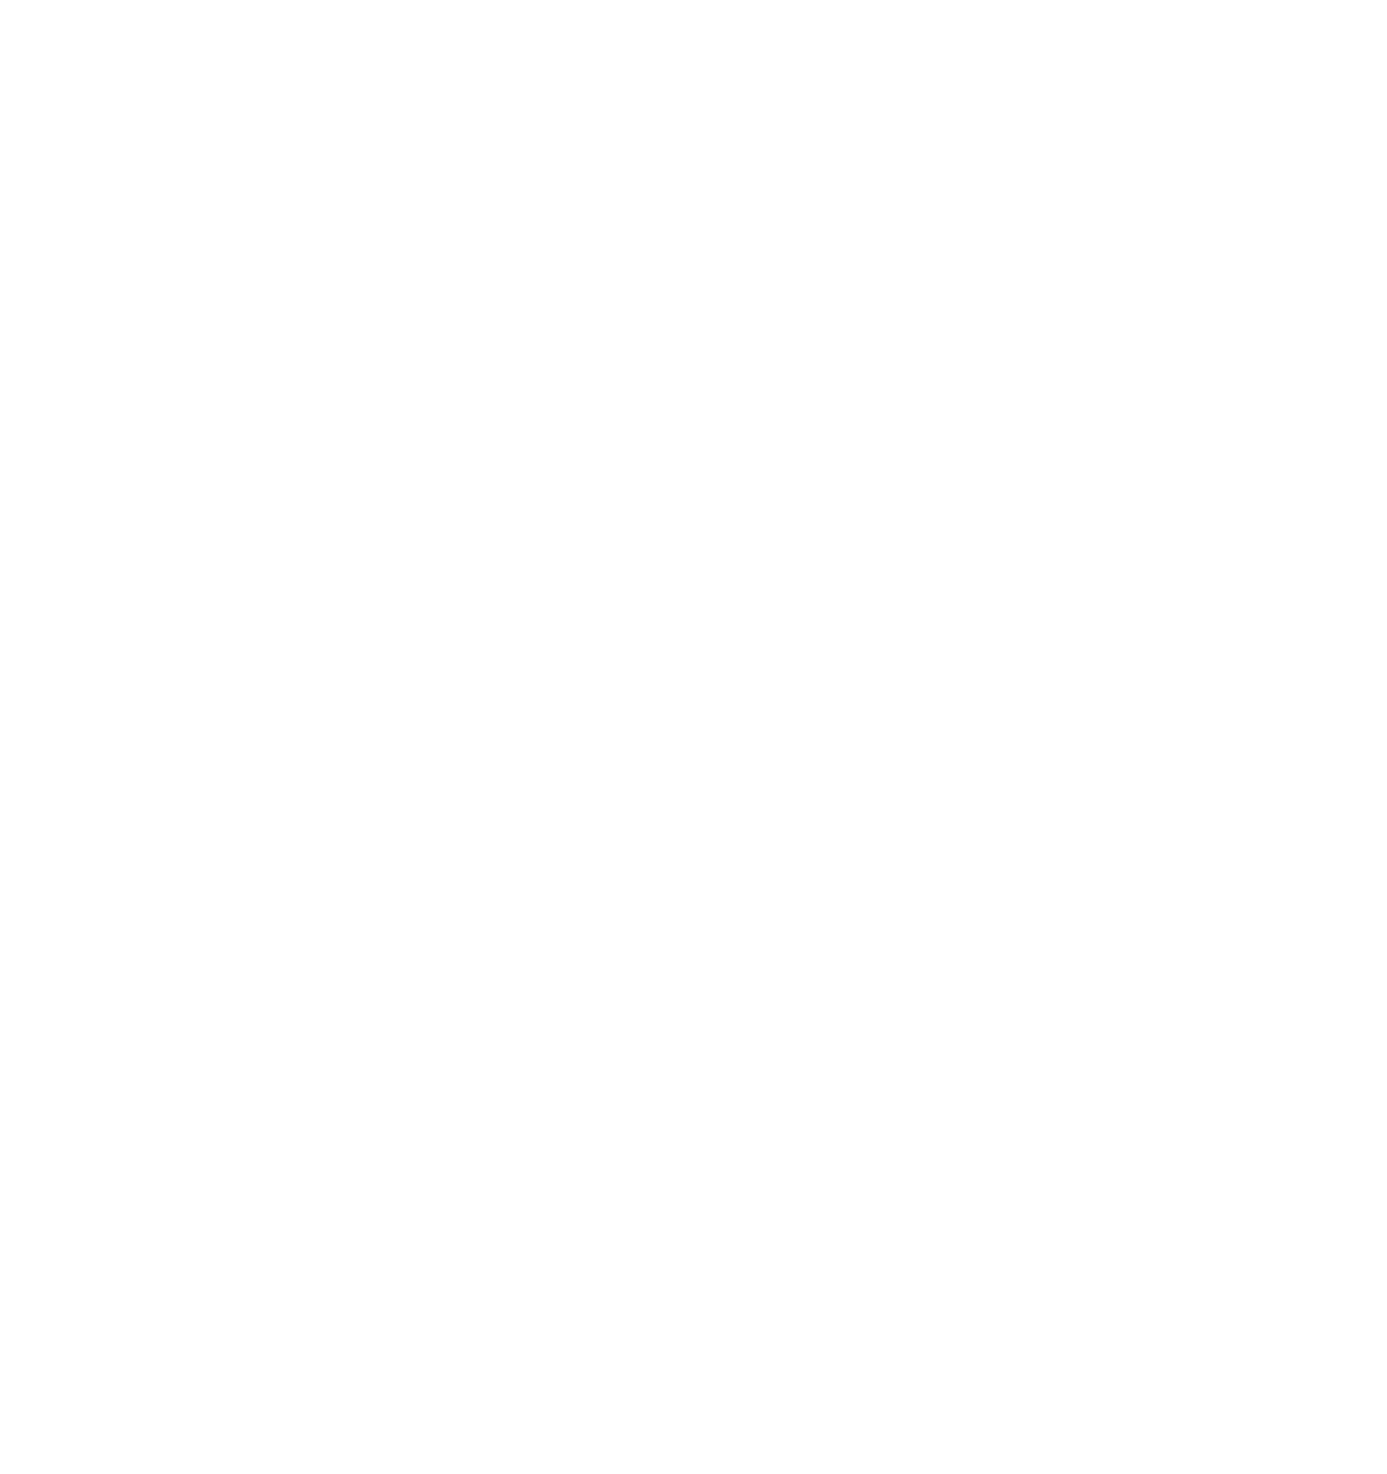 Esaki tabata un aña festivo pa Miss Youth Aruba celebrando nan prome lustro, unda nan a presenta e show di e anochi f   